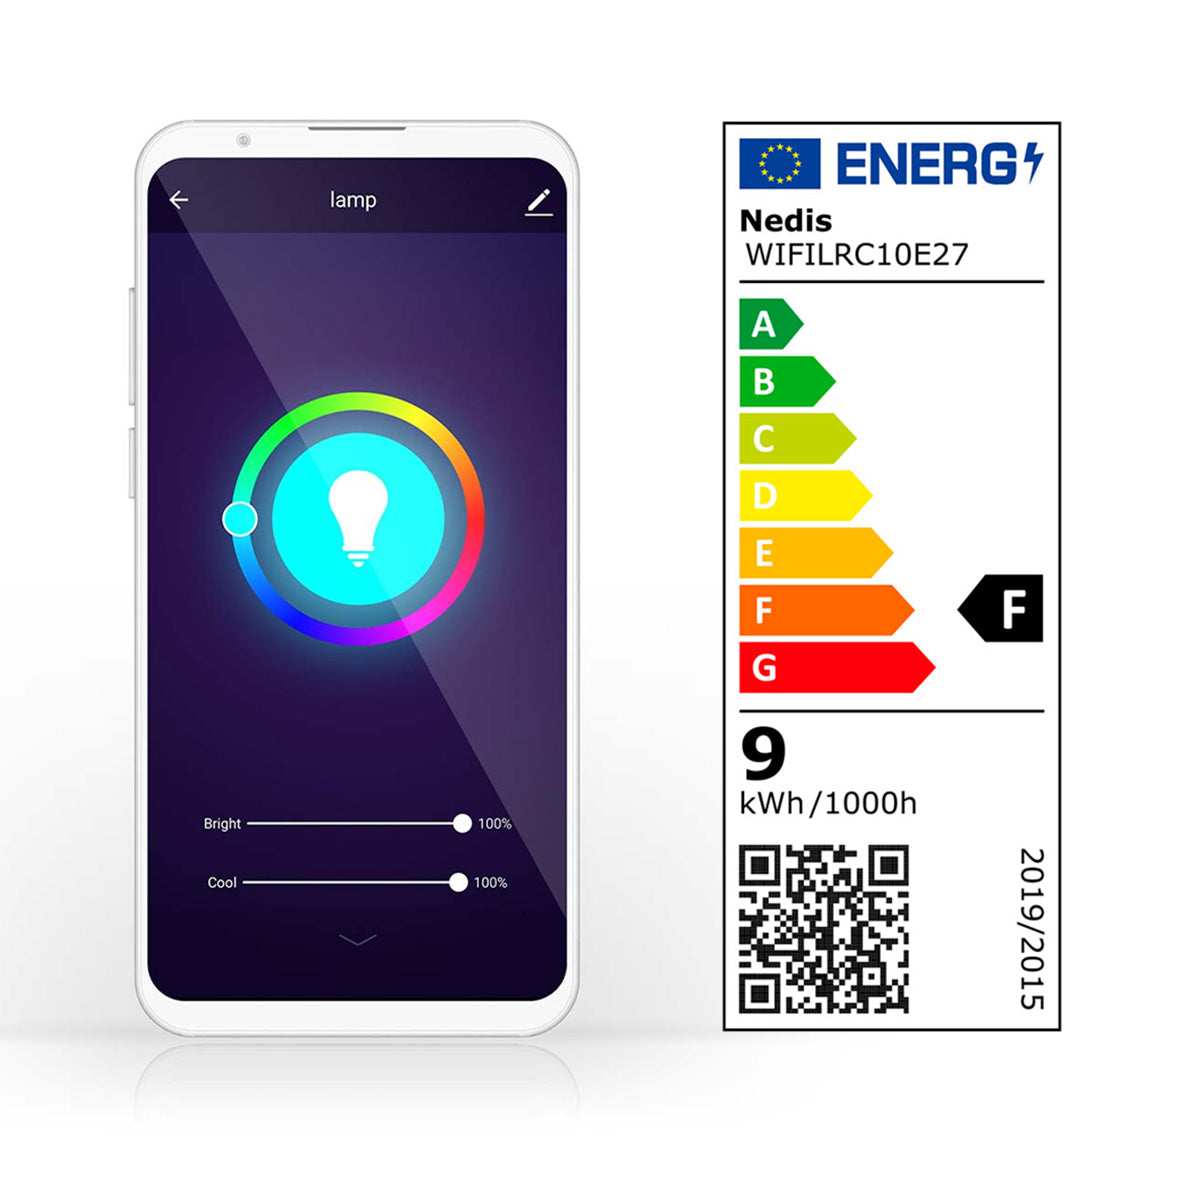 Nedis lâmpada inteligente E27 com eficiência energética nível F controlada remotamente através da aplicação Nedis Smart Life